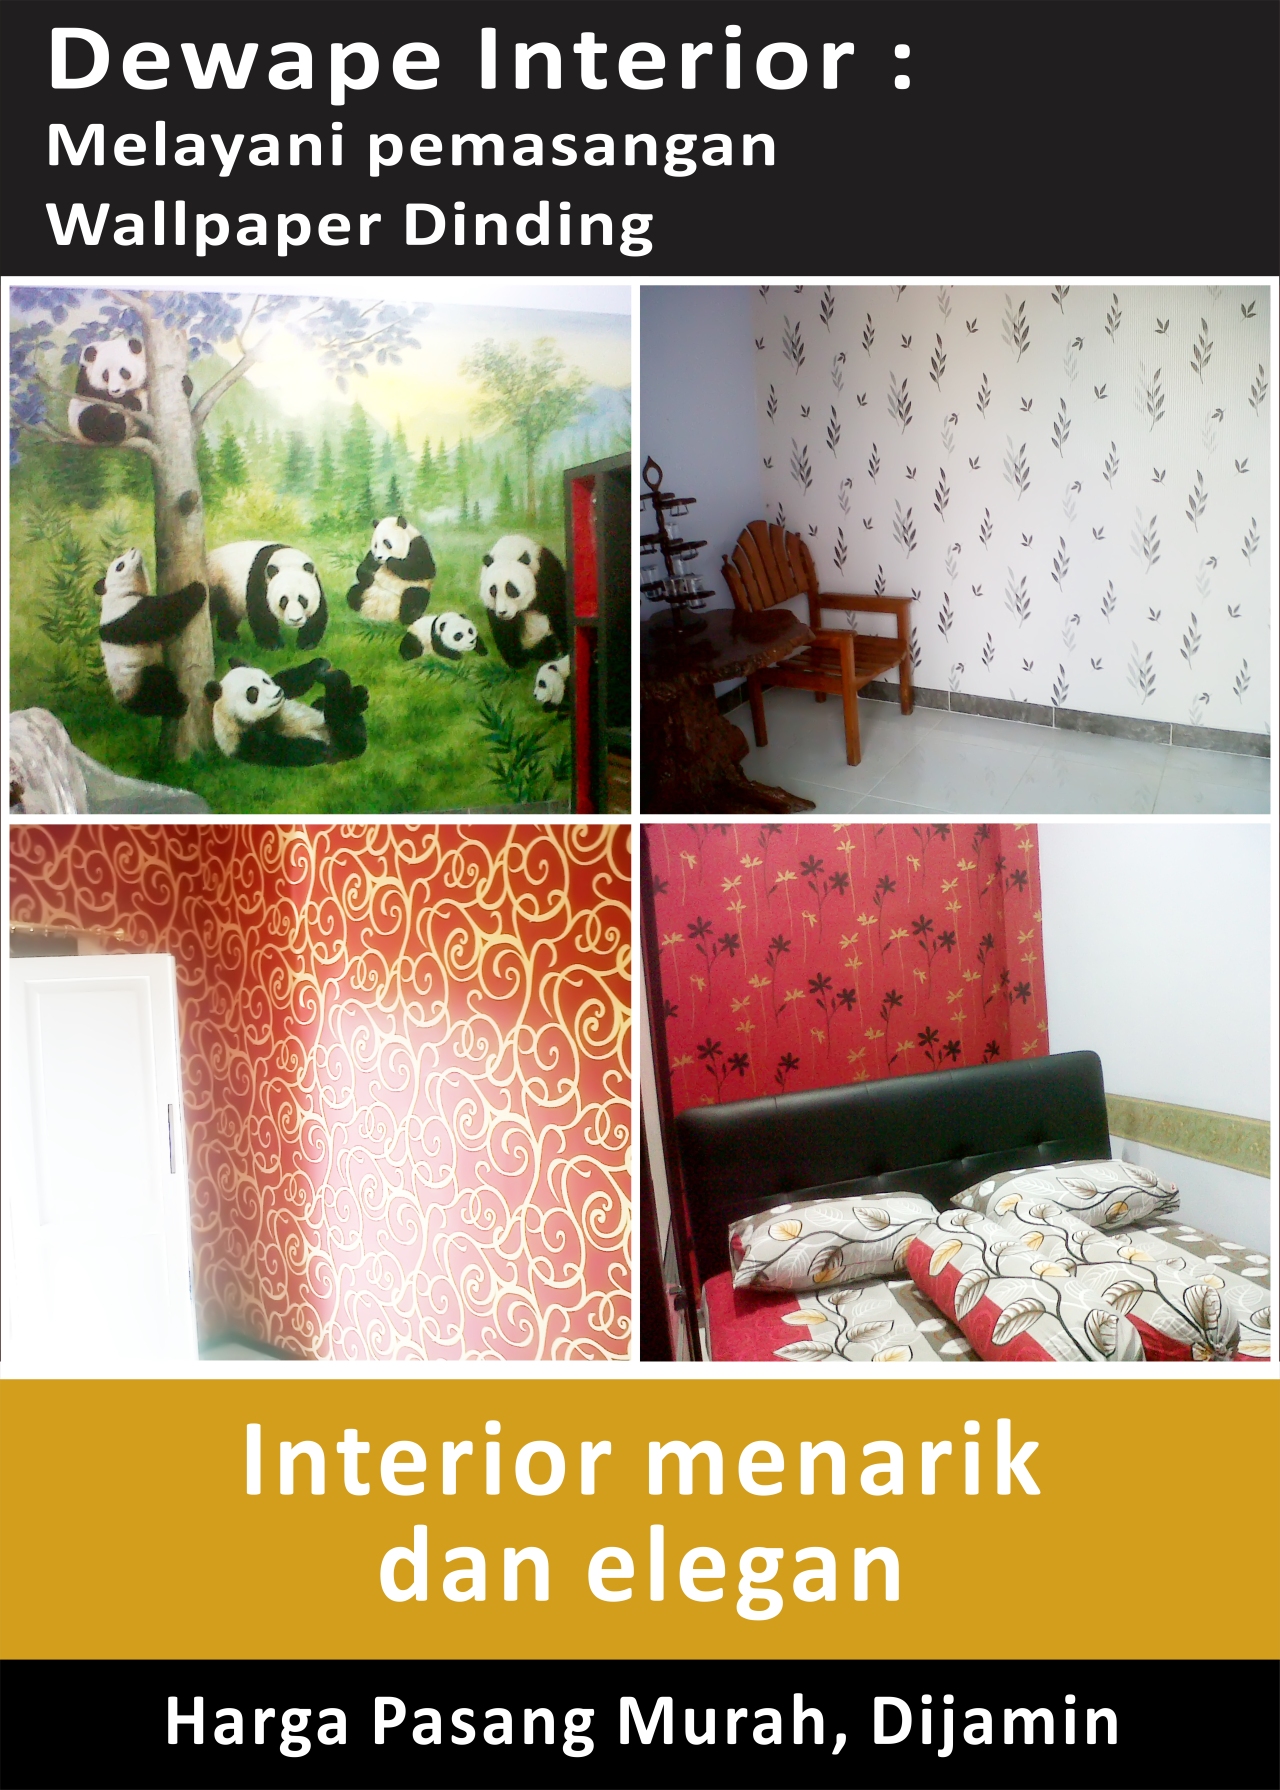 Jual Wallpaper Dinding Probolinggo Toko Grosir Wallpaper Malang